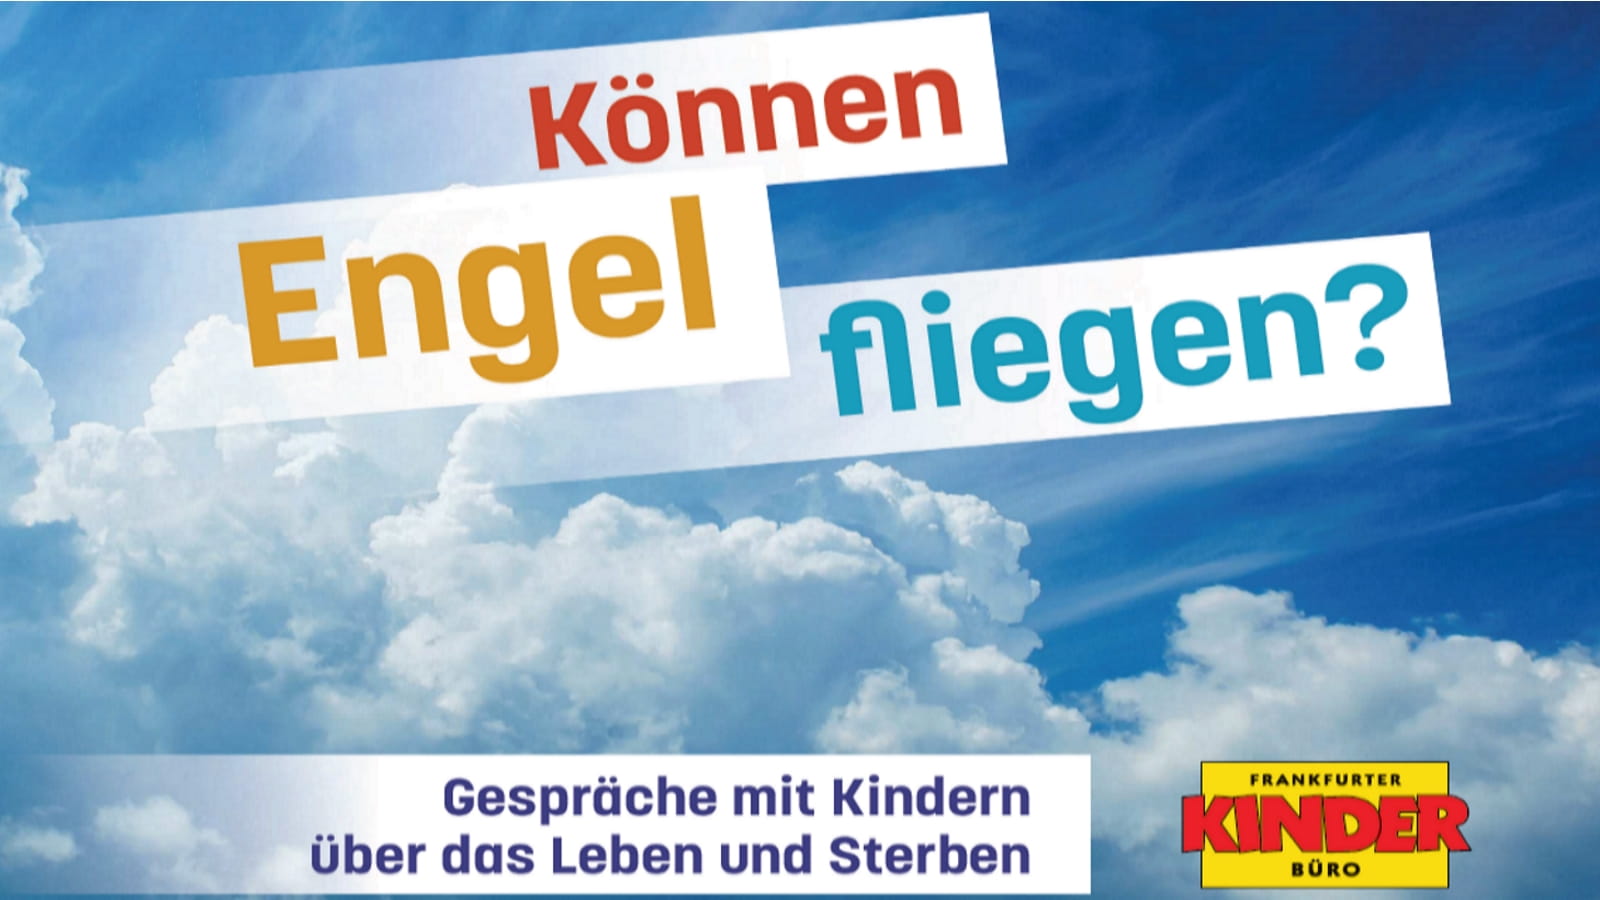 Auf blauem Wolkenhintergrund ist der Schriftzug "Können Engel fliegen?" zu sehen.